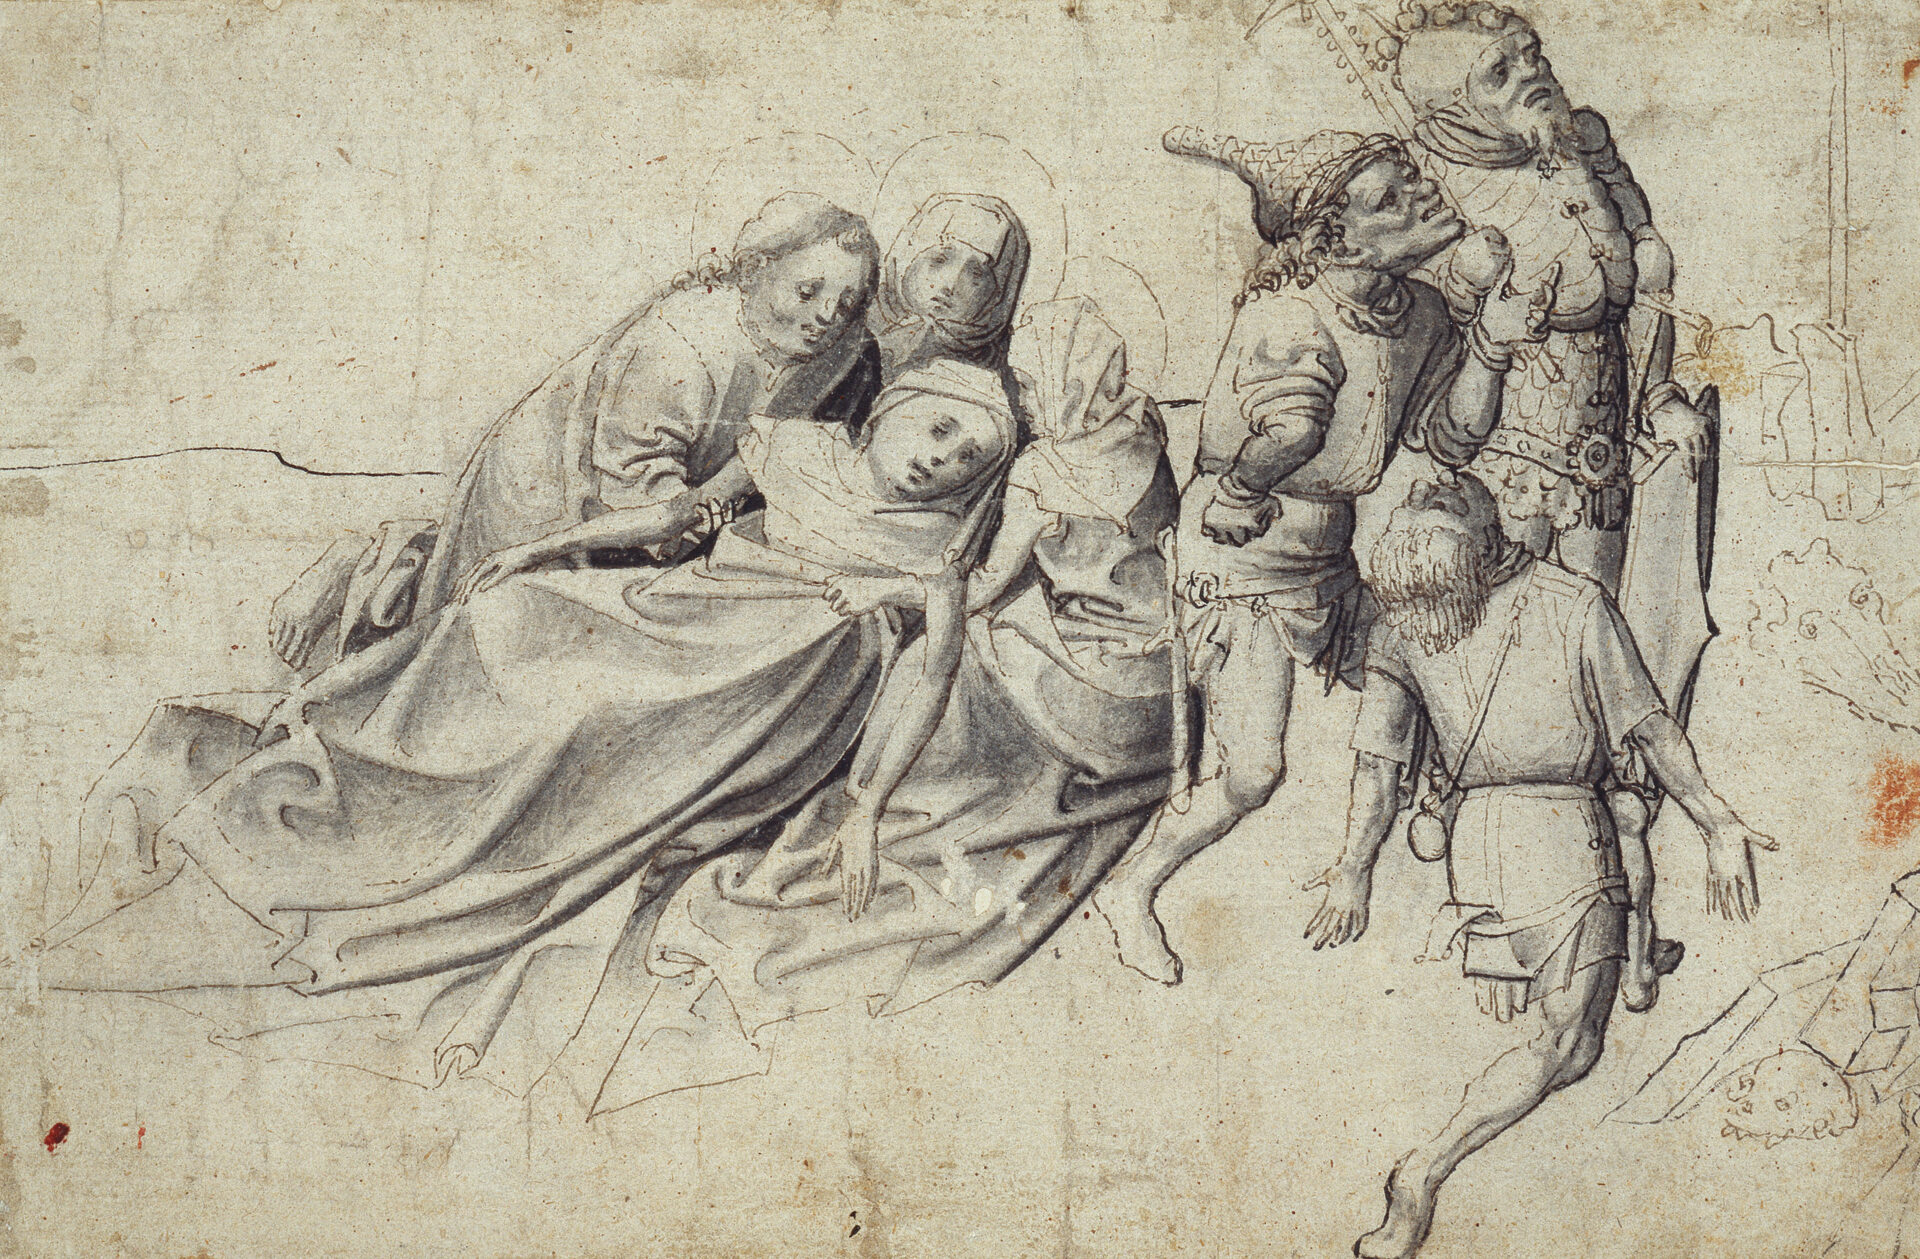 Meister der Worcester-Kreuztragung, Trauernde und Soldaten unter dem Kreuz, ca 1425-1430, Städel Museum, Public Domain